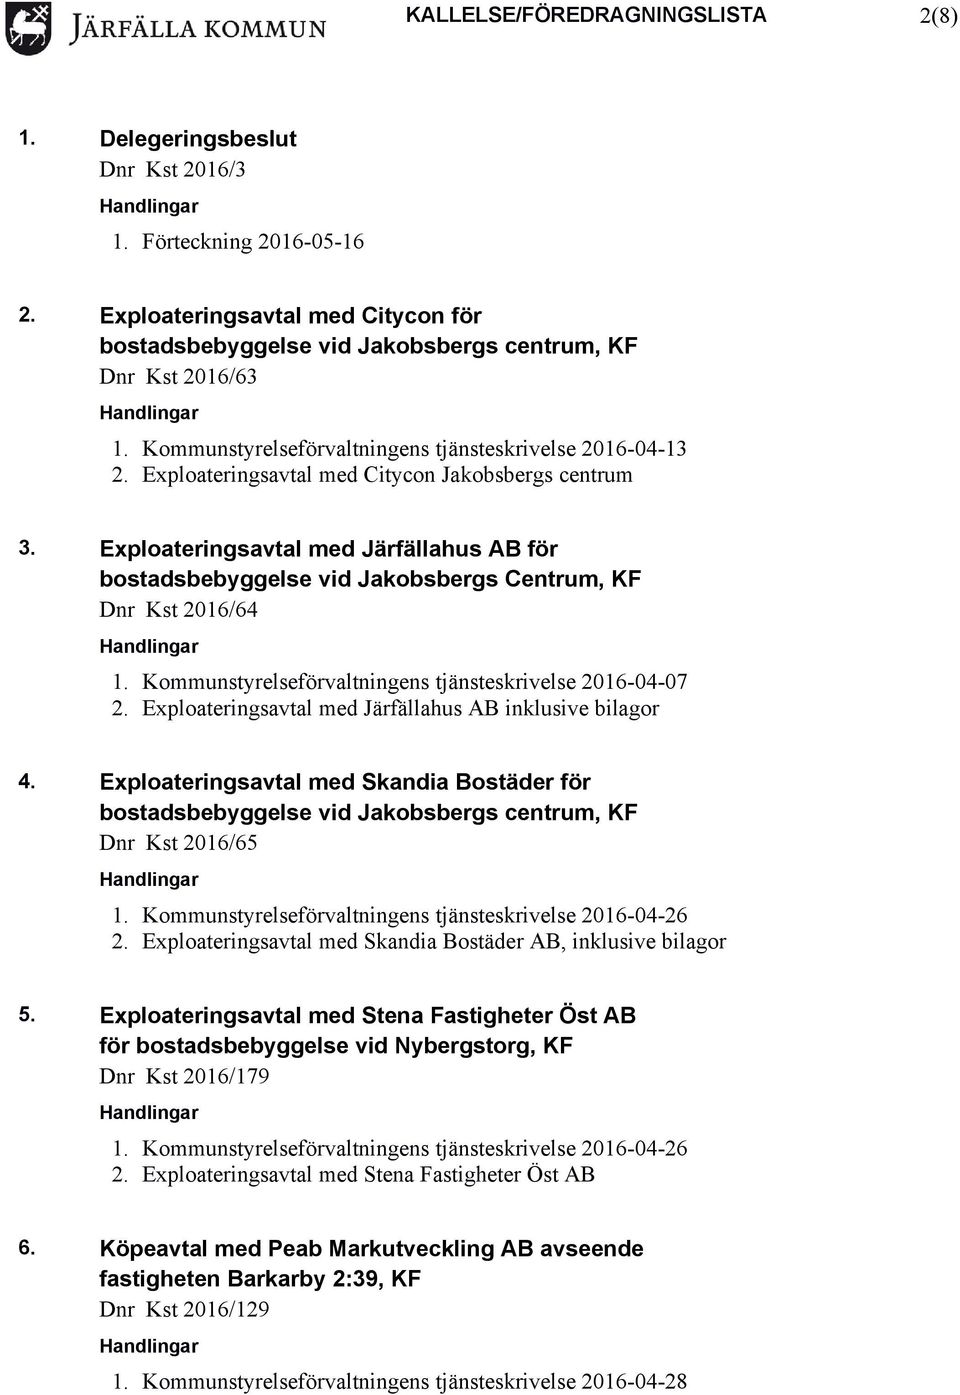 Exploateringsavtal med Järfällahus AB för bostadsbebyggelse vid Jakobsbergs Centrum, KF Dnr Kst 2016/64 1. Kommunstyrelseförvaltningens tjänsteskrivelse 2016-04-07 2.